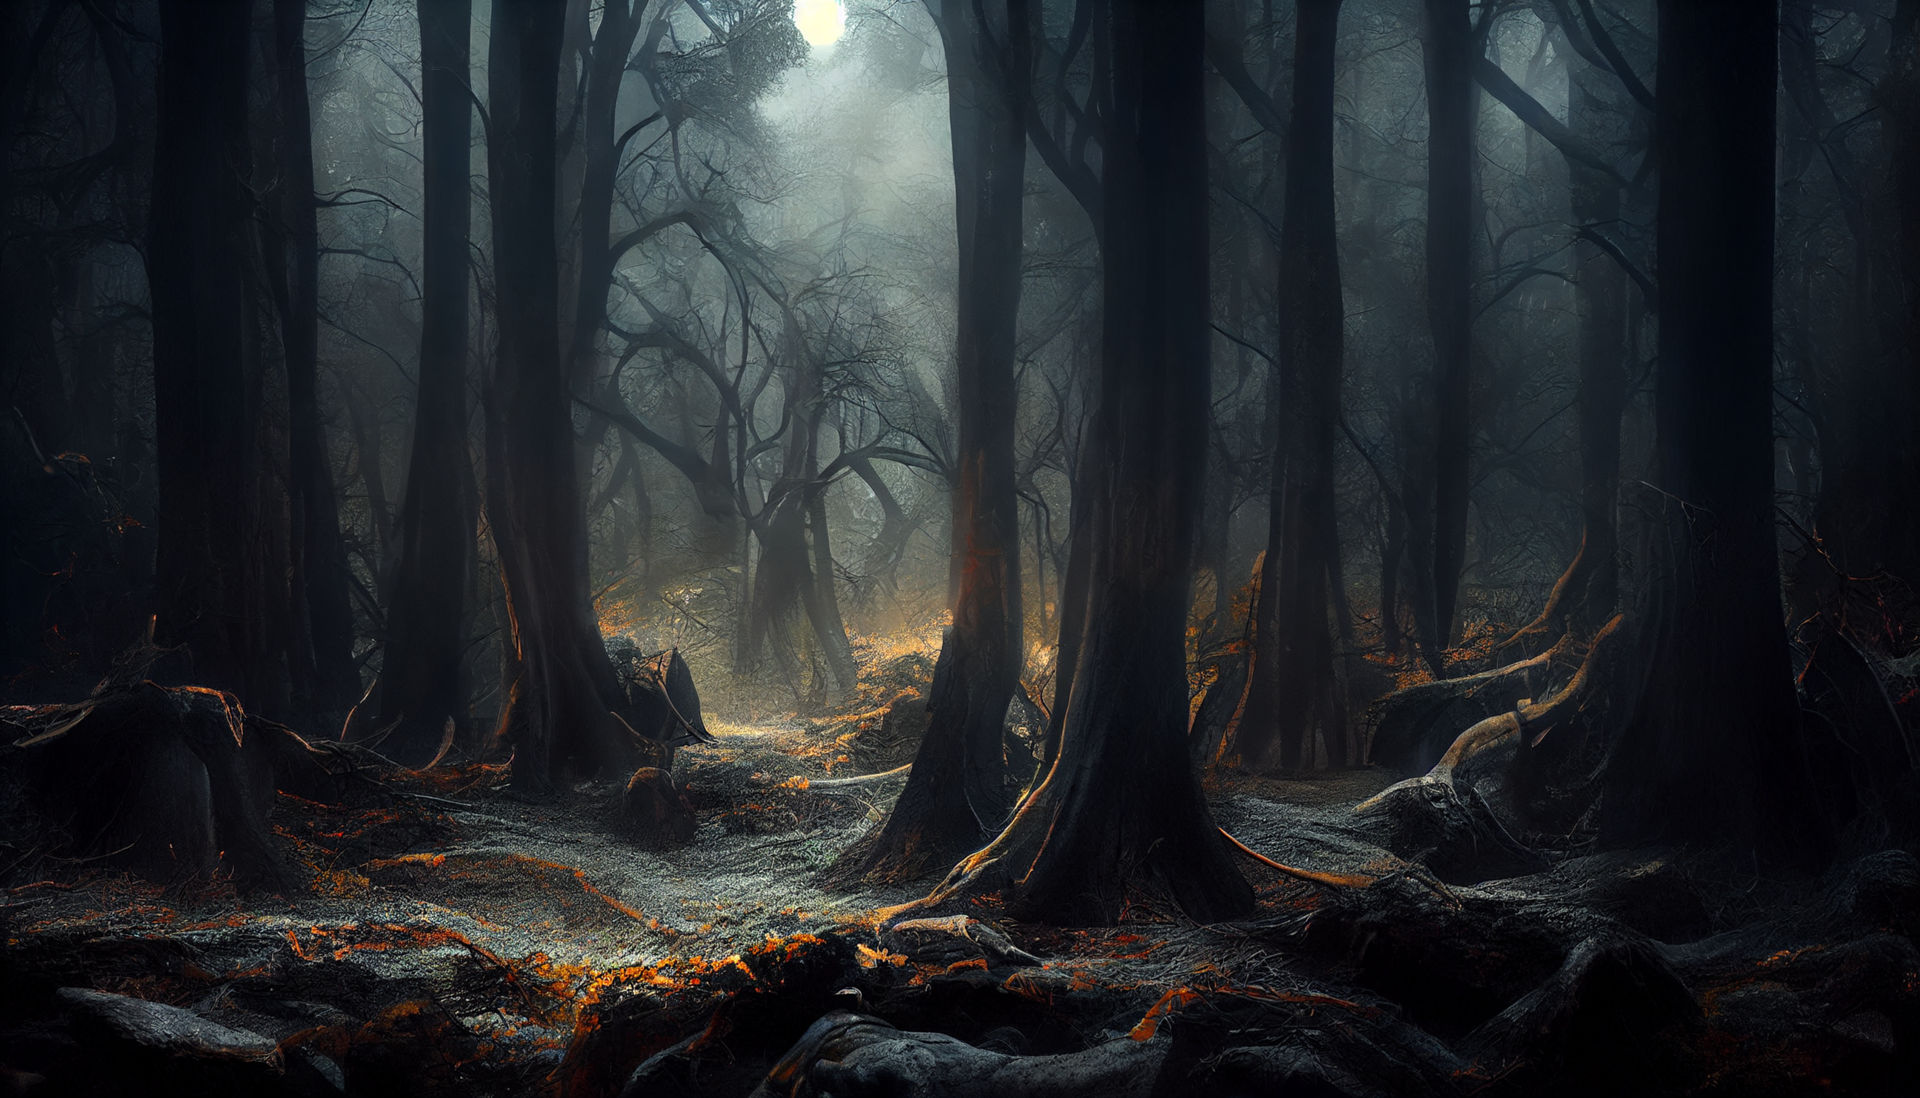 Dark forest by RaveFox369 on DeviantArt